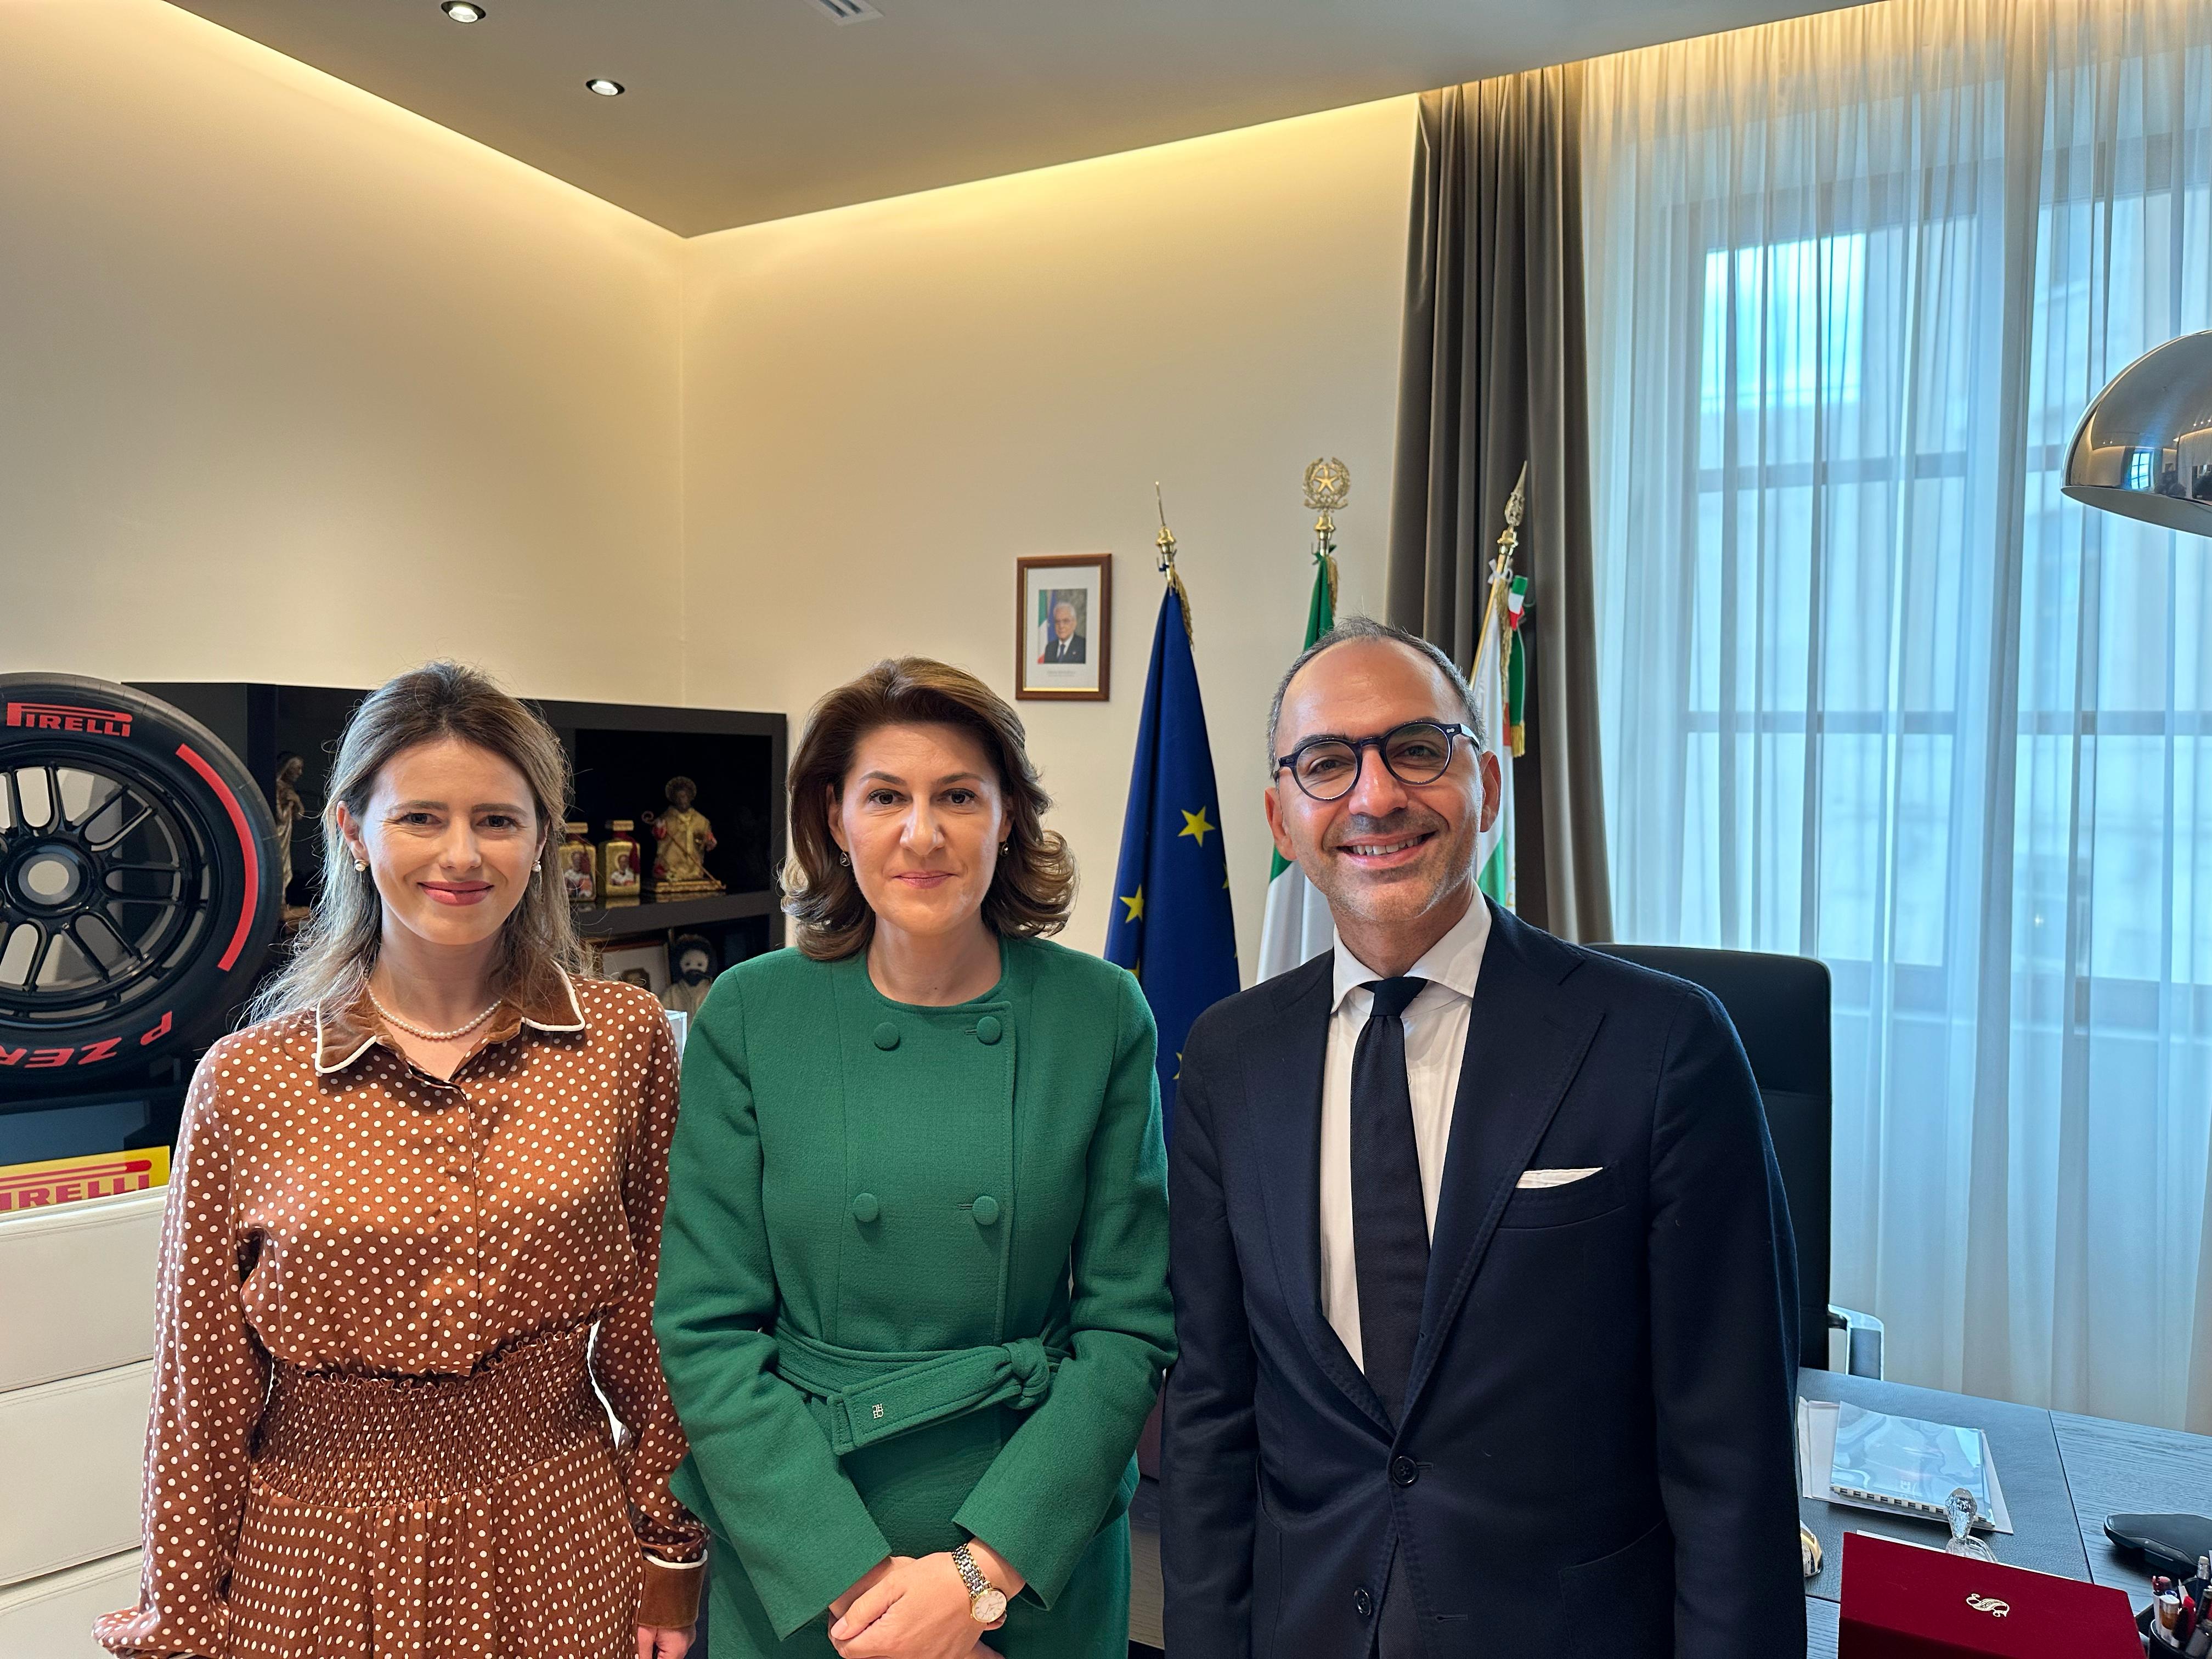 Galleria Il vice presidente della Regione Puglia Piemontese riceve  l’ambasciatrice di Romania in Italia - Diapositiva 1 di 4